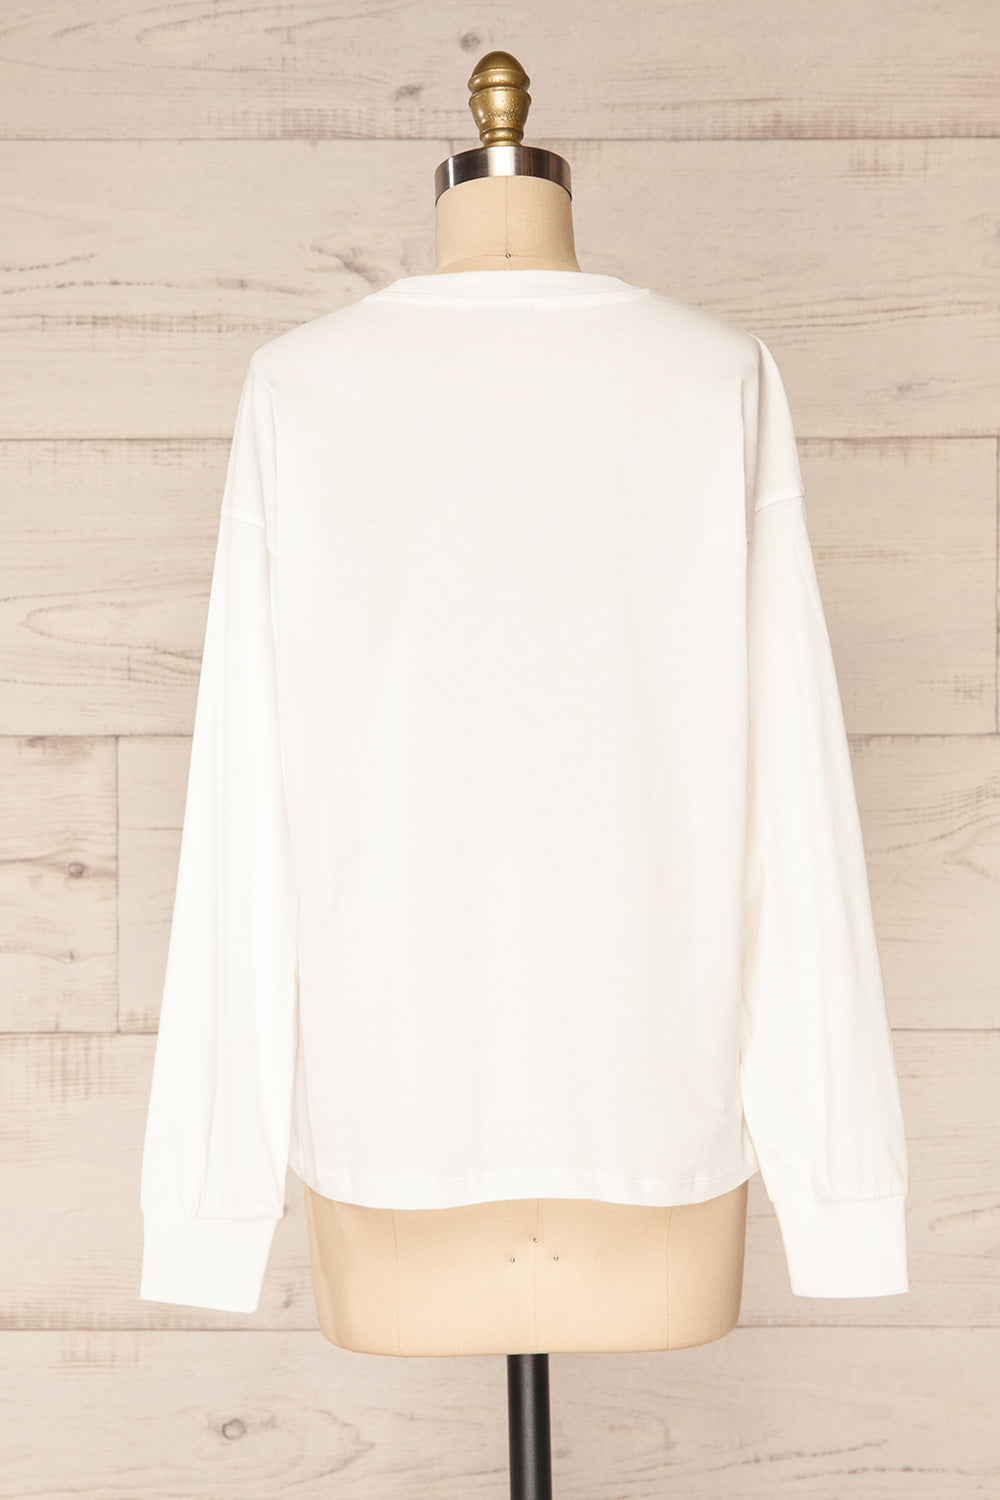 Mielec White Long Sleeve Top | La petite garçonne back view